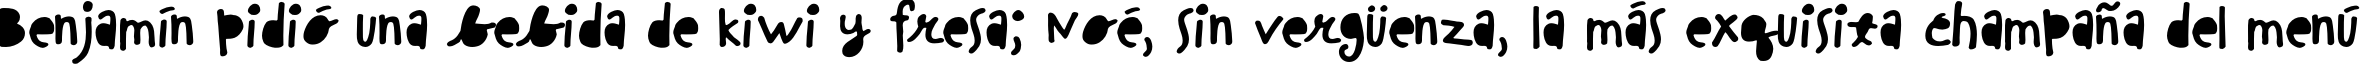 Пример написания шрифтом ChinchillaBlack текста на испанском